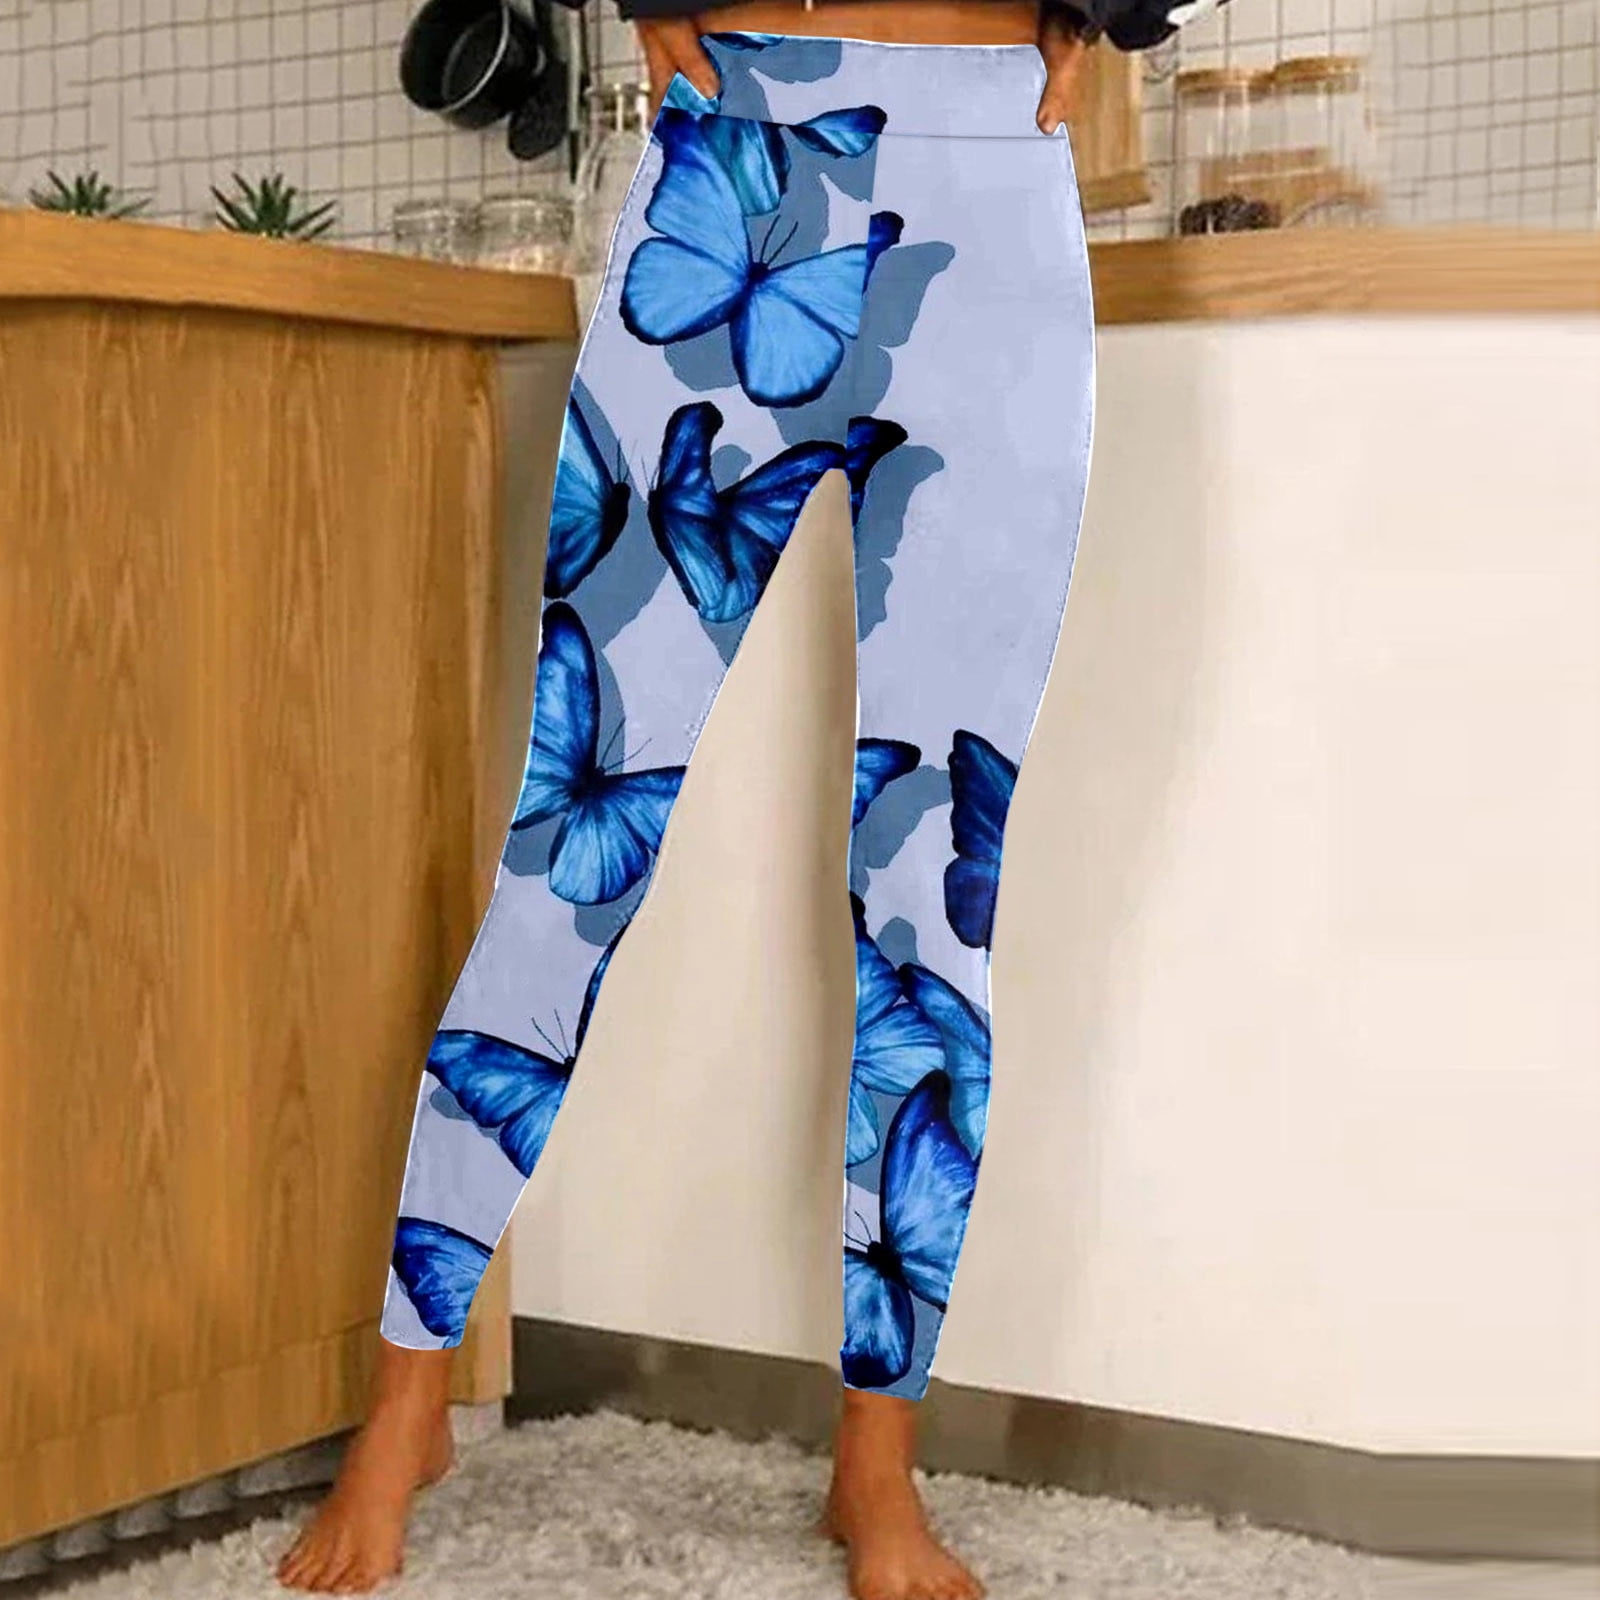 YUHAOTIN Yoga Pants for Women Long Women Casual Fashion Tight